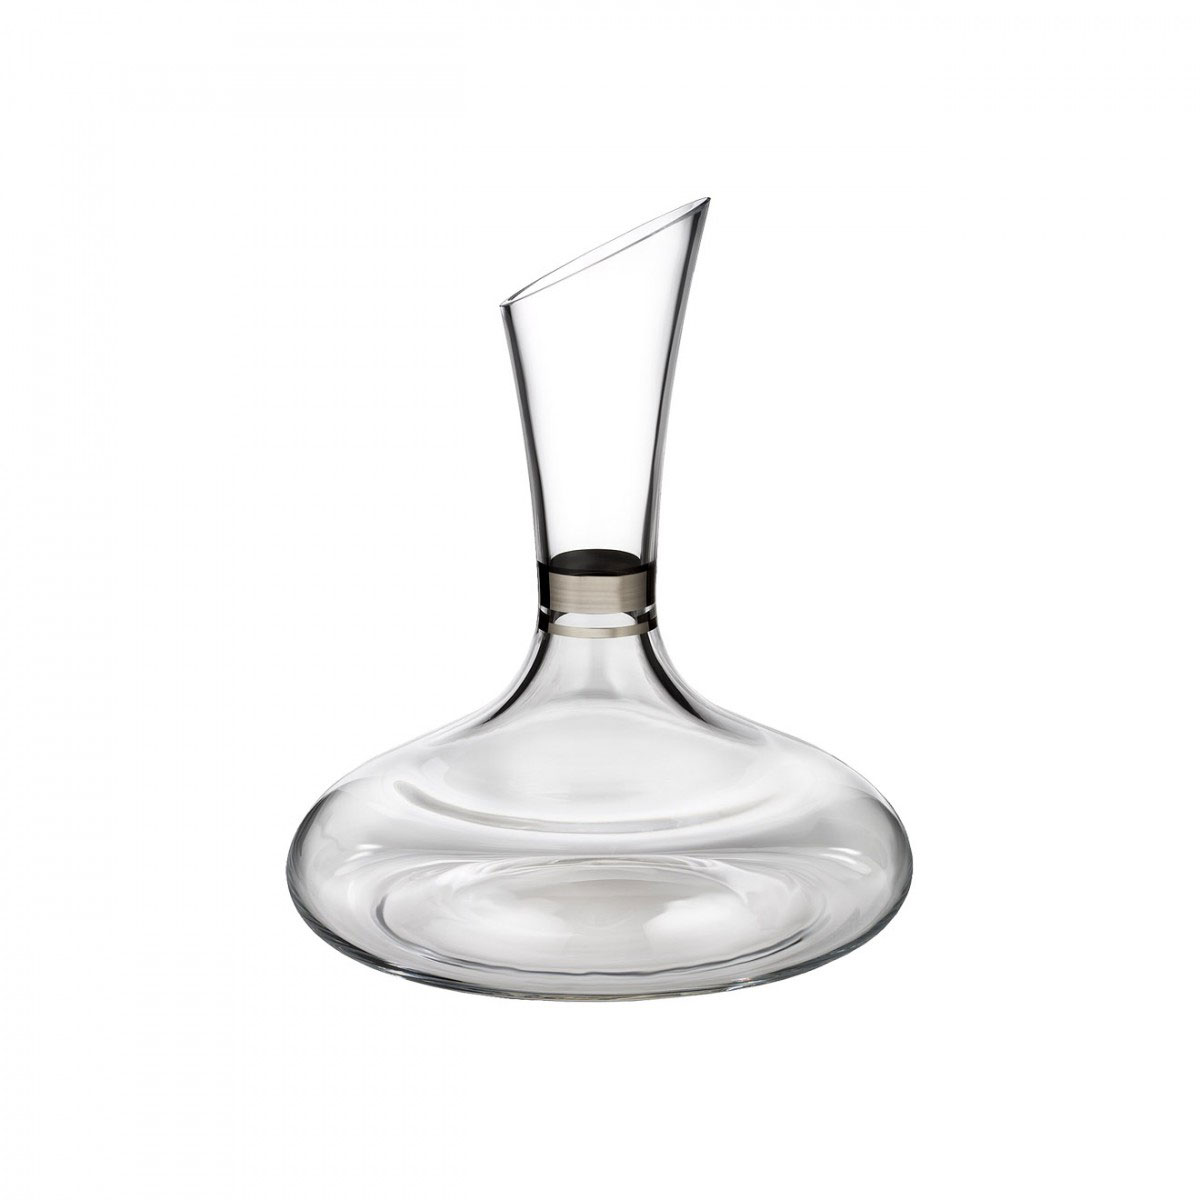 Waterford 40001093 Lismore Elegance Merlot Wine Pair 750 milliliters Lead Free Crystal Clear 